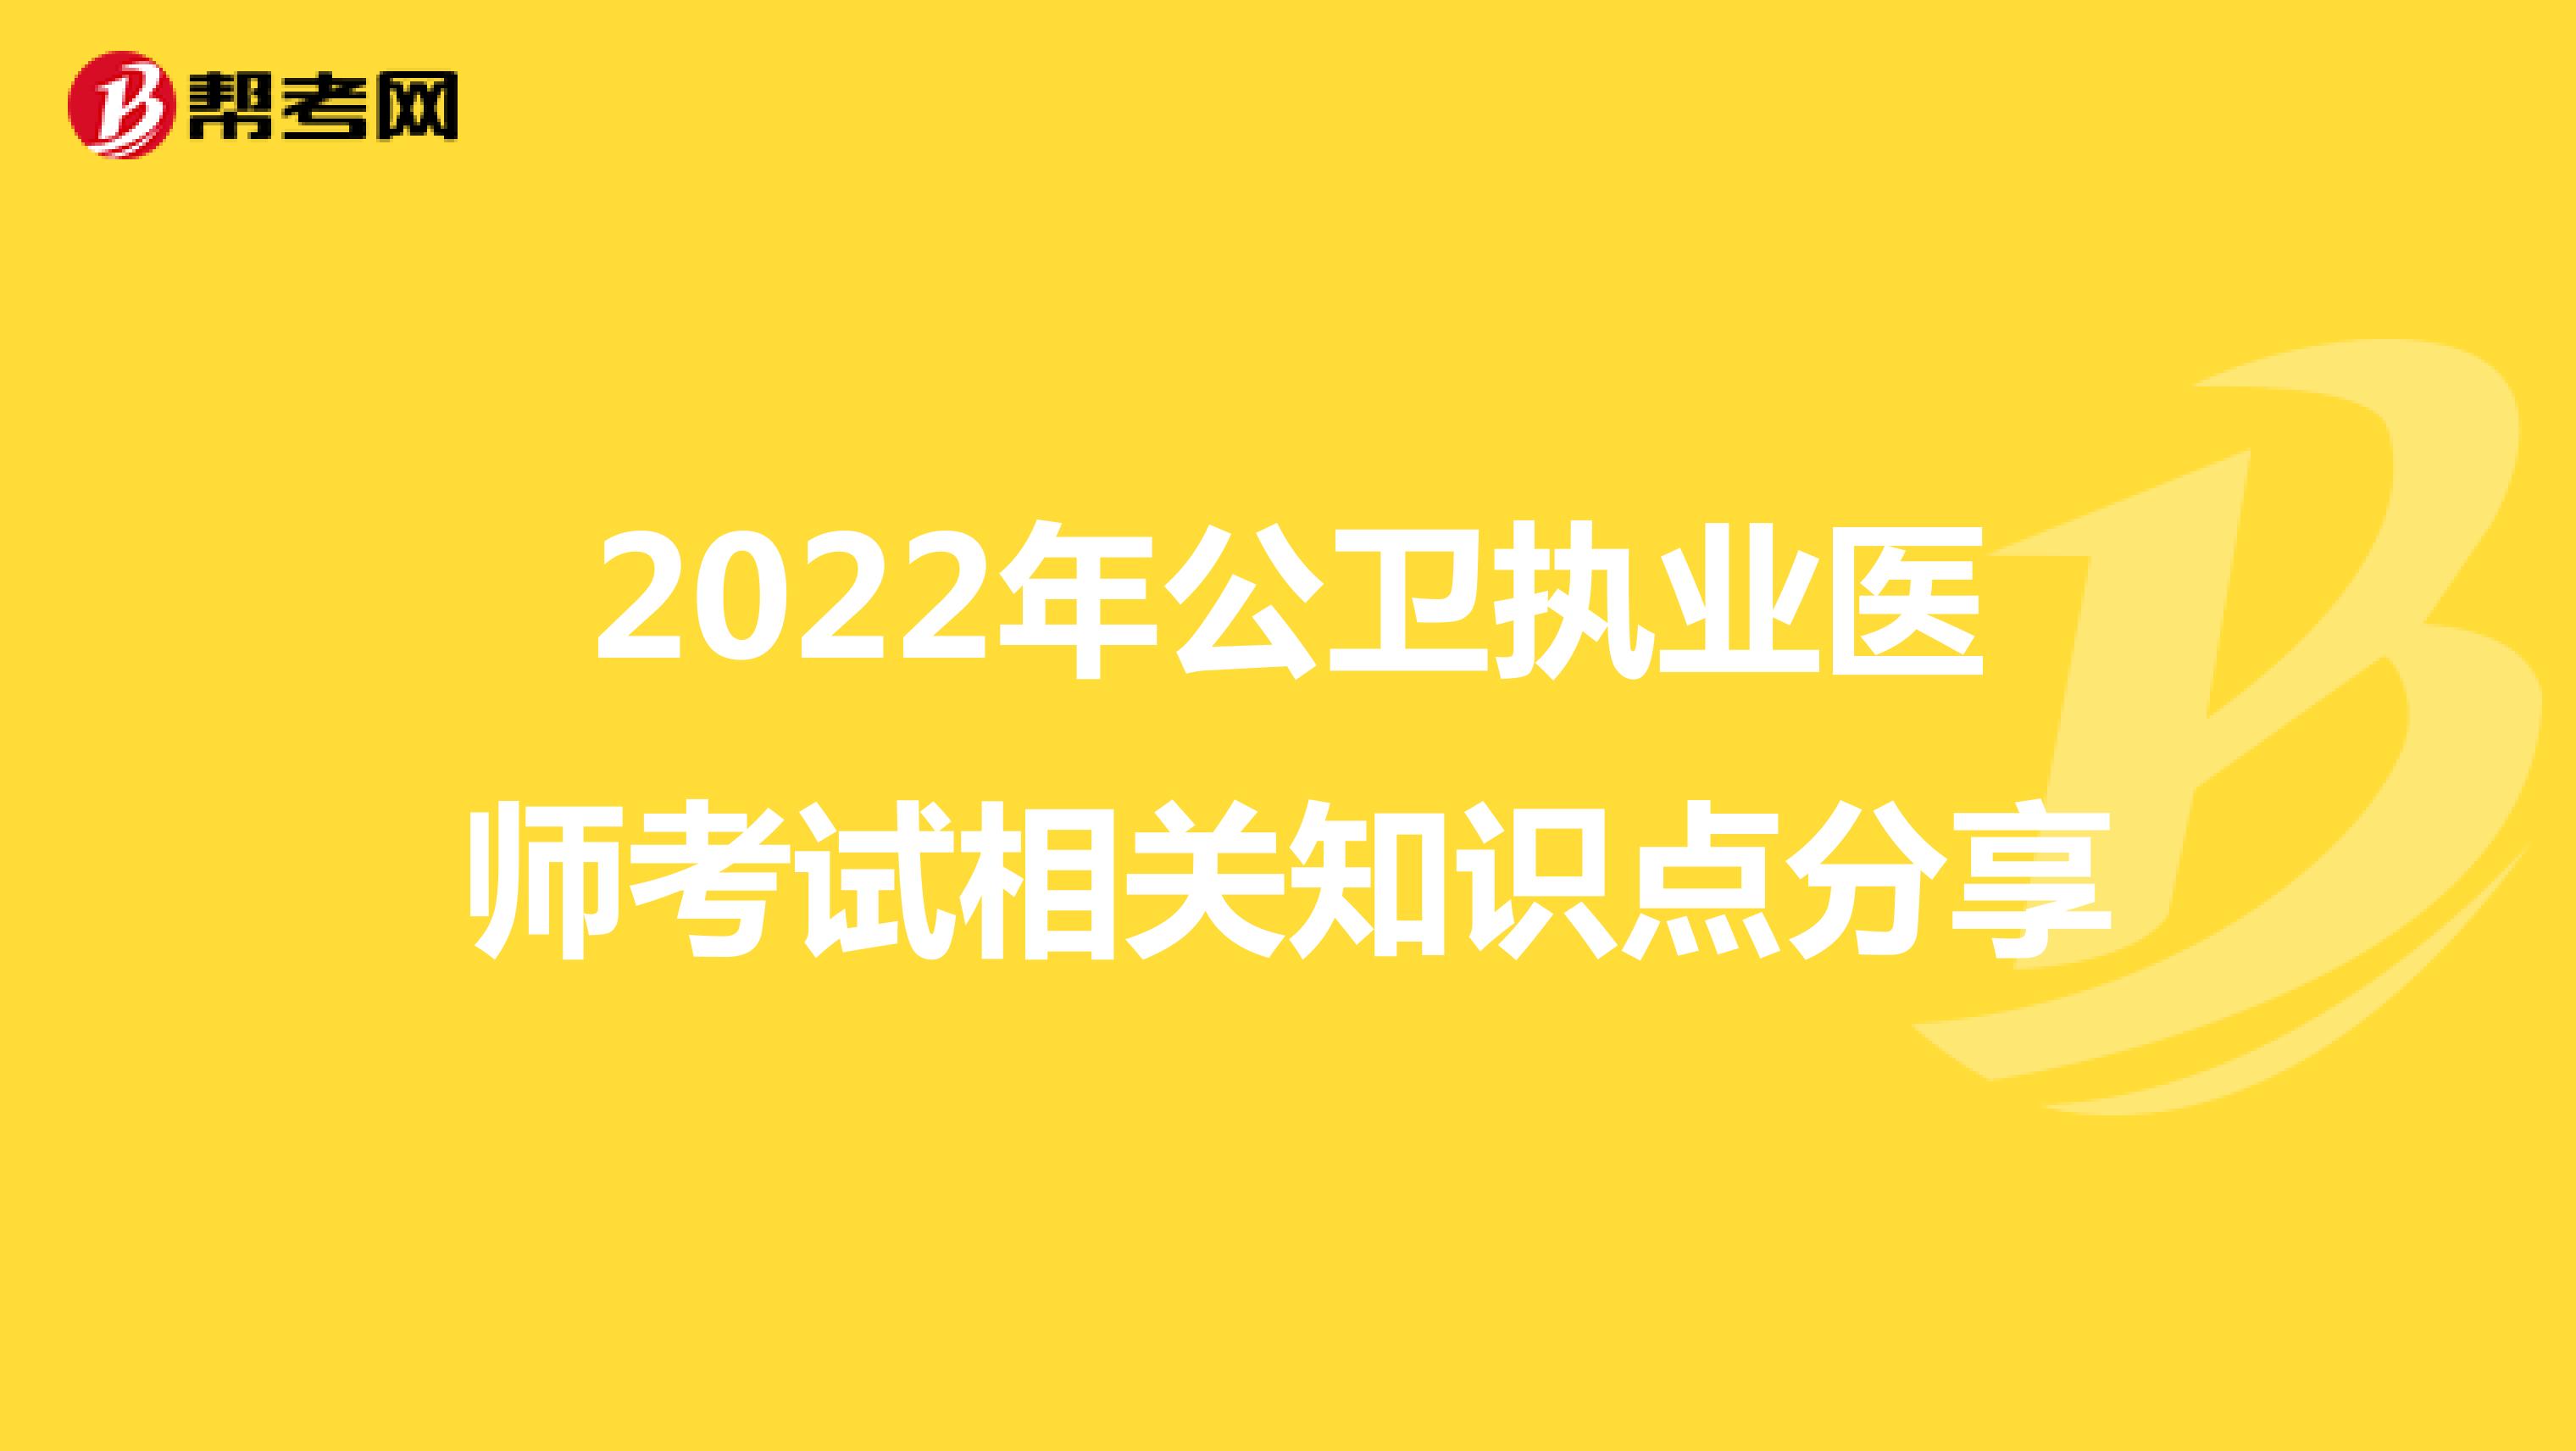 2022年公卫执业医师考试相关知识点分享